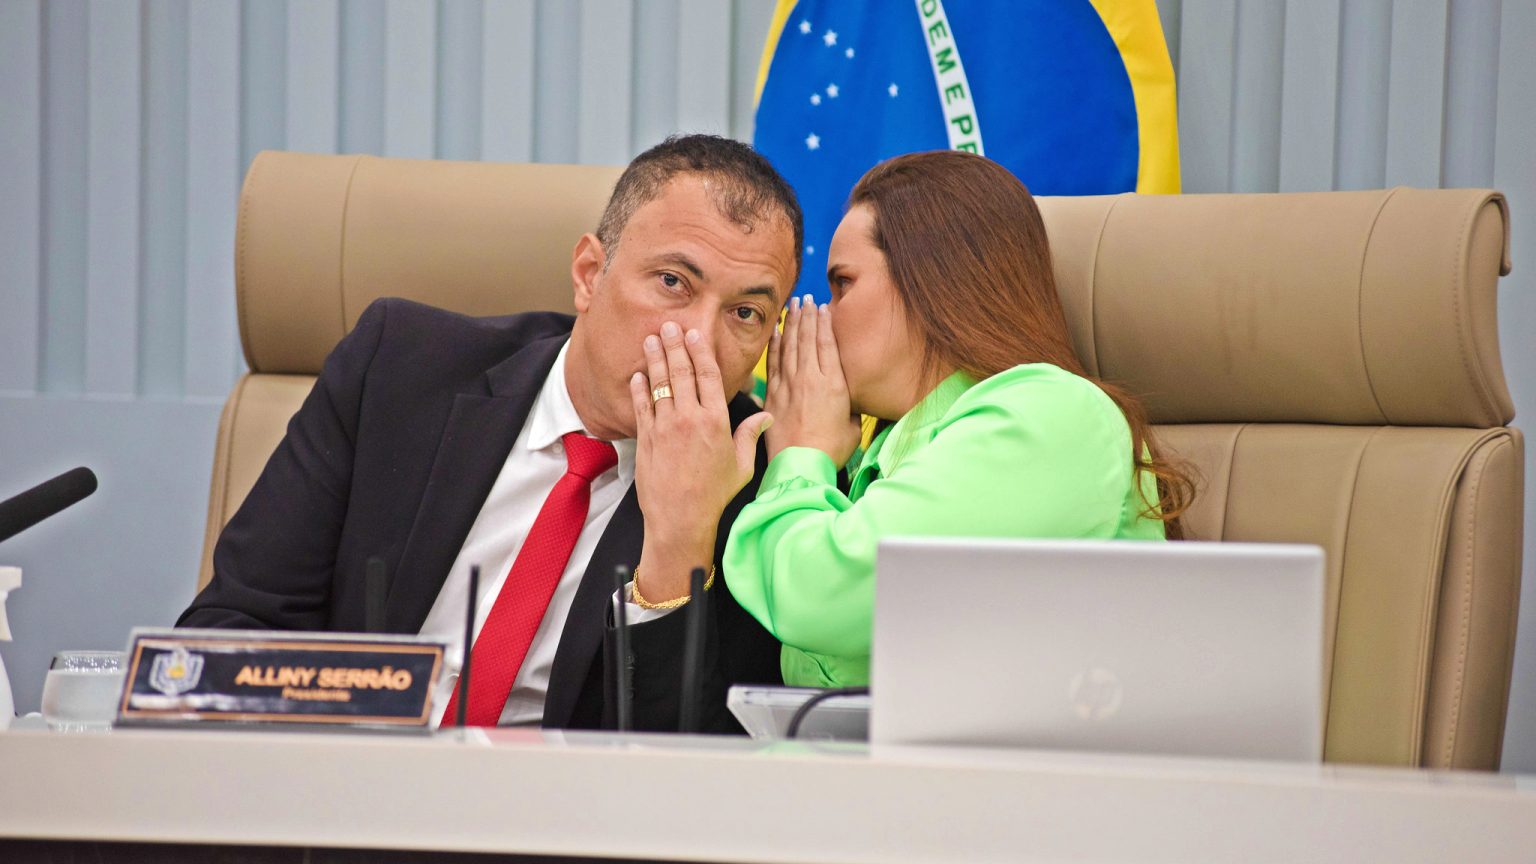 Alliny Serrão busca reeleição para a presidência da ALAP, mas enfrenta resistência